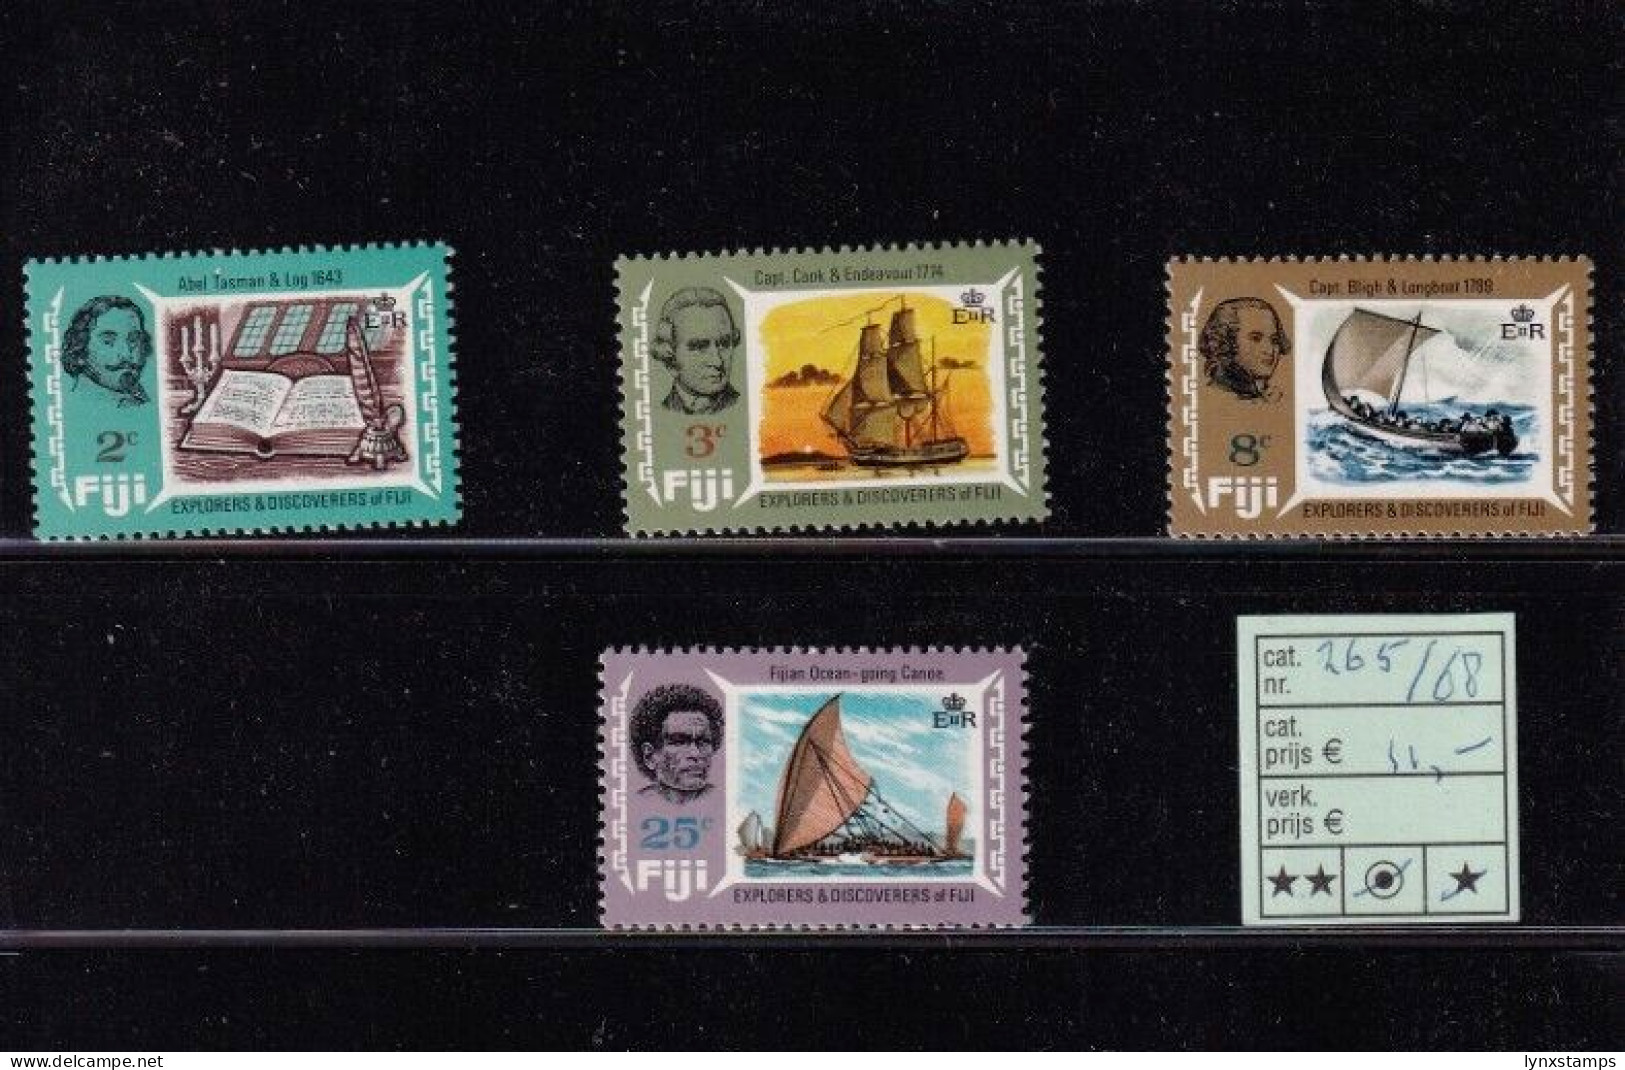 ER02 Fiji Explorerers And Discoverers Of Fiji - MNH Stamps - Fiji (1970-...)